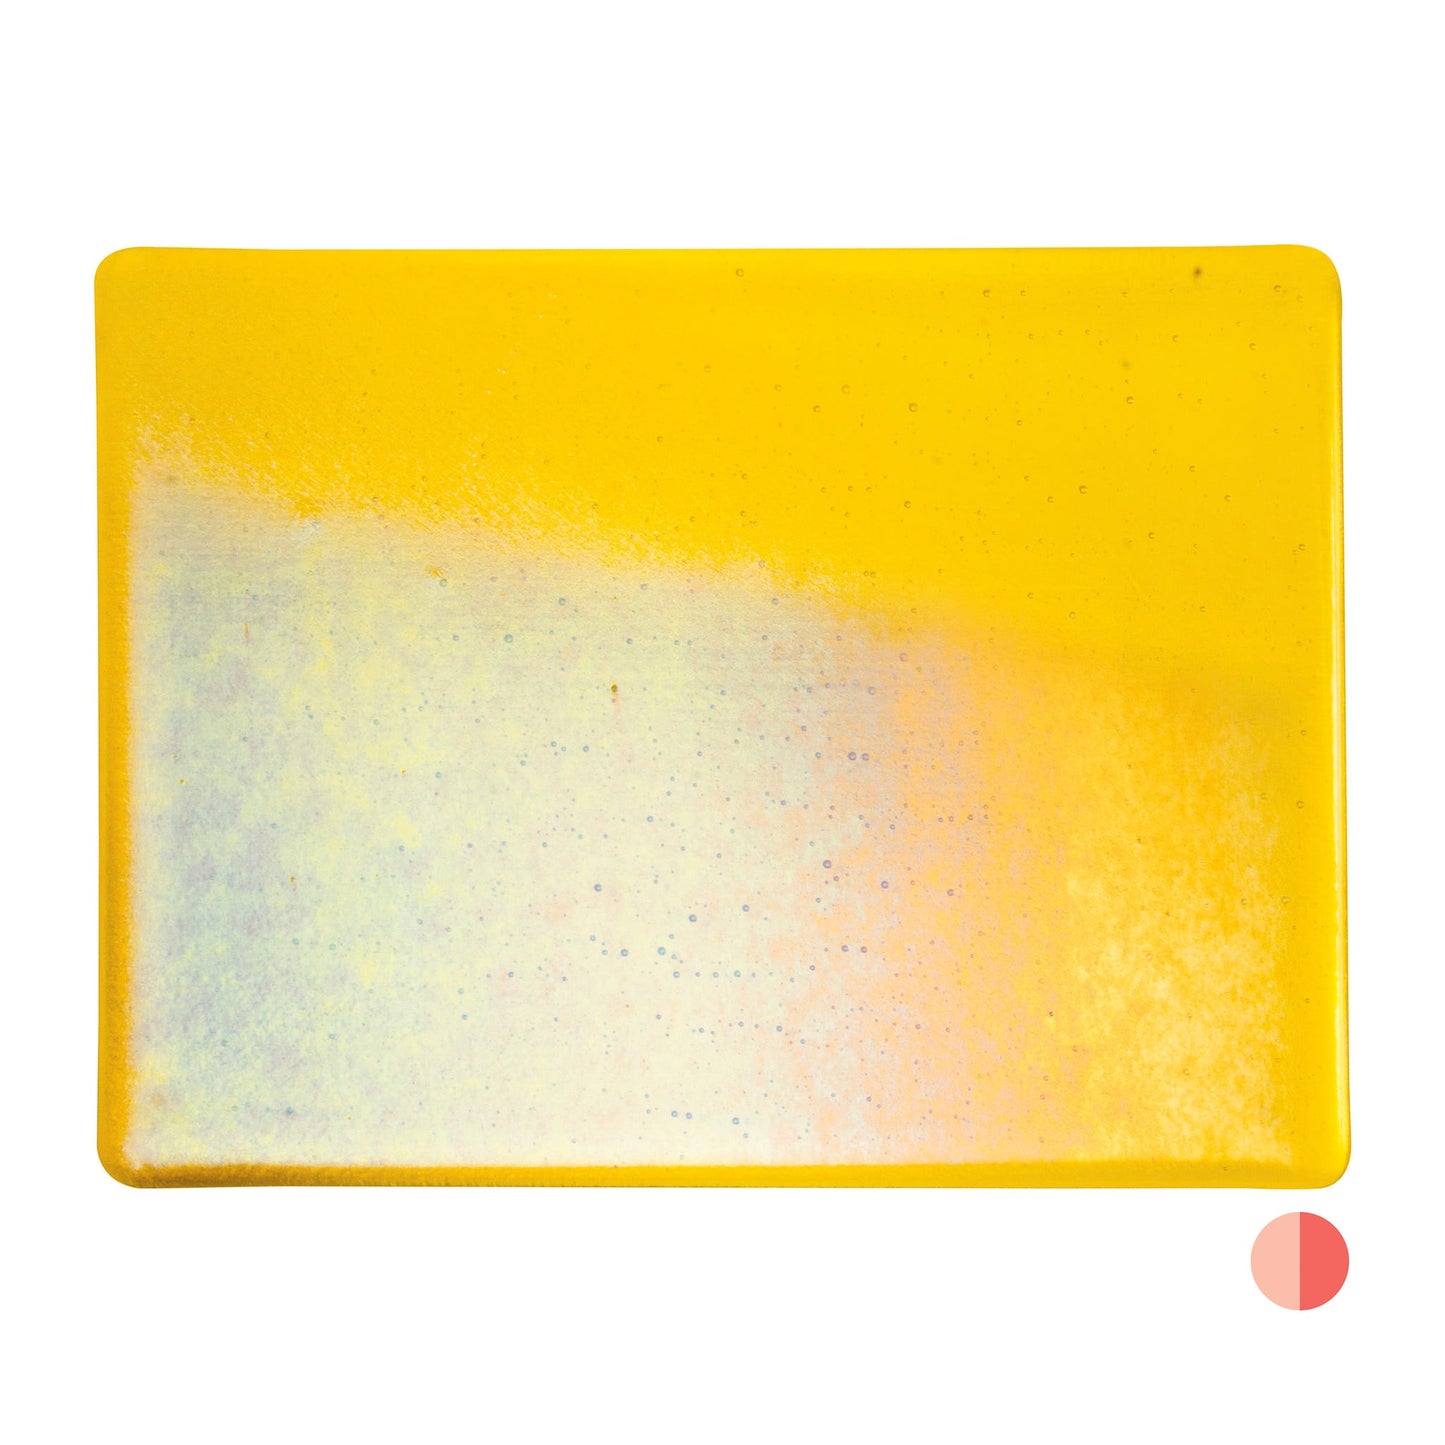 Bullseye COE90 Fusing Glass 001120 Yellow, Iridescent, Rainbow Half Sheet